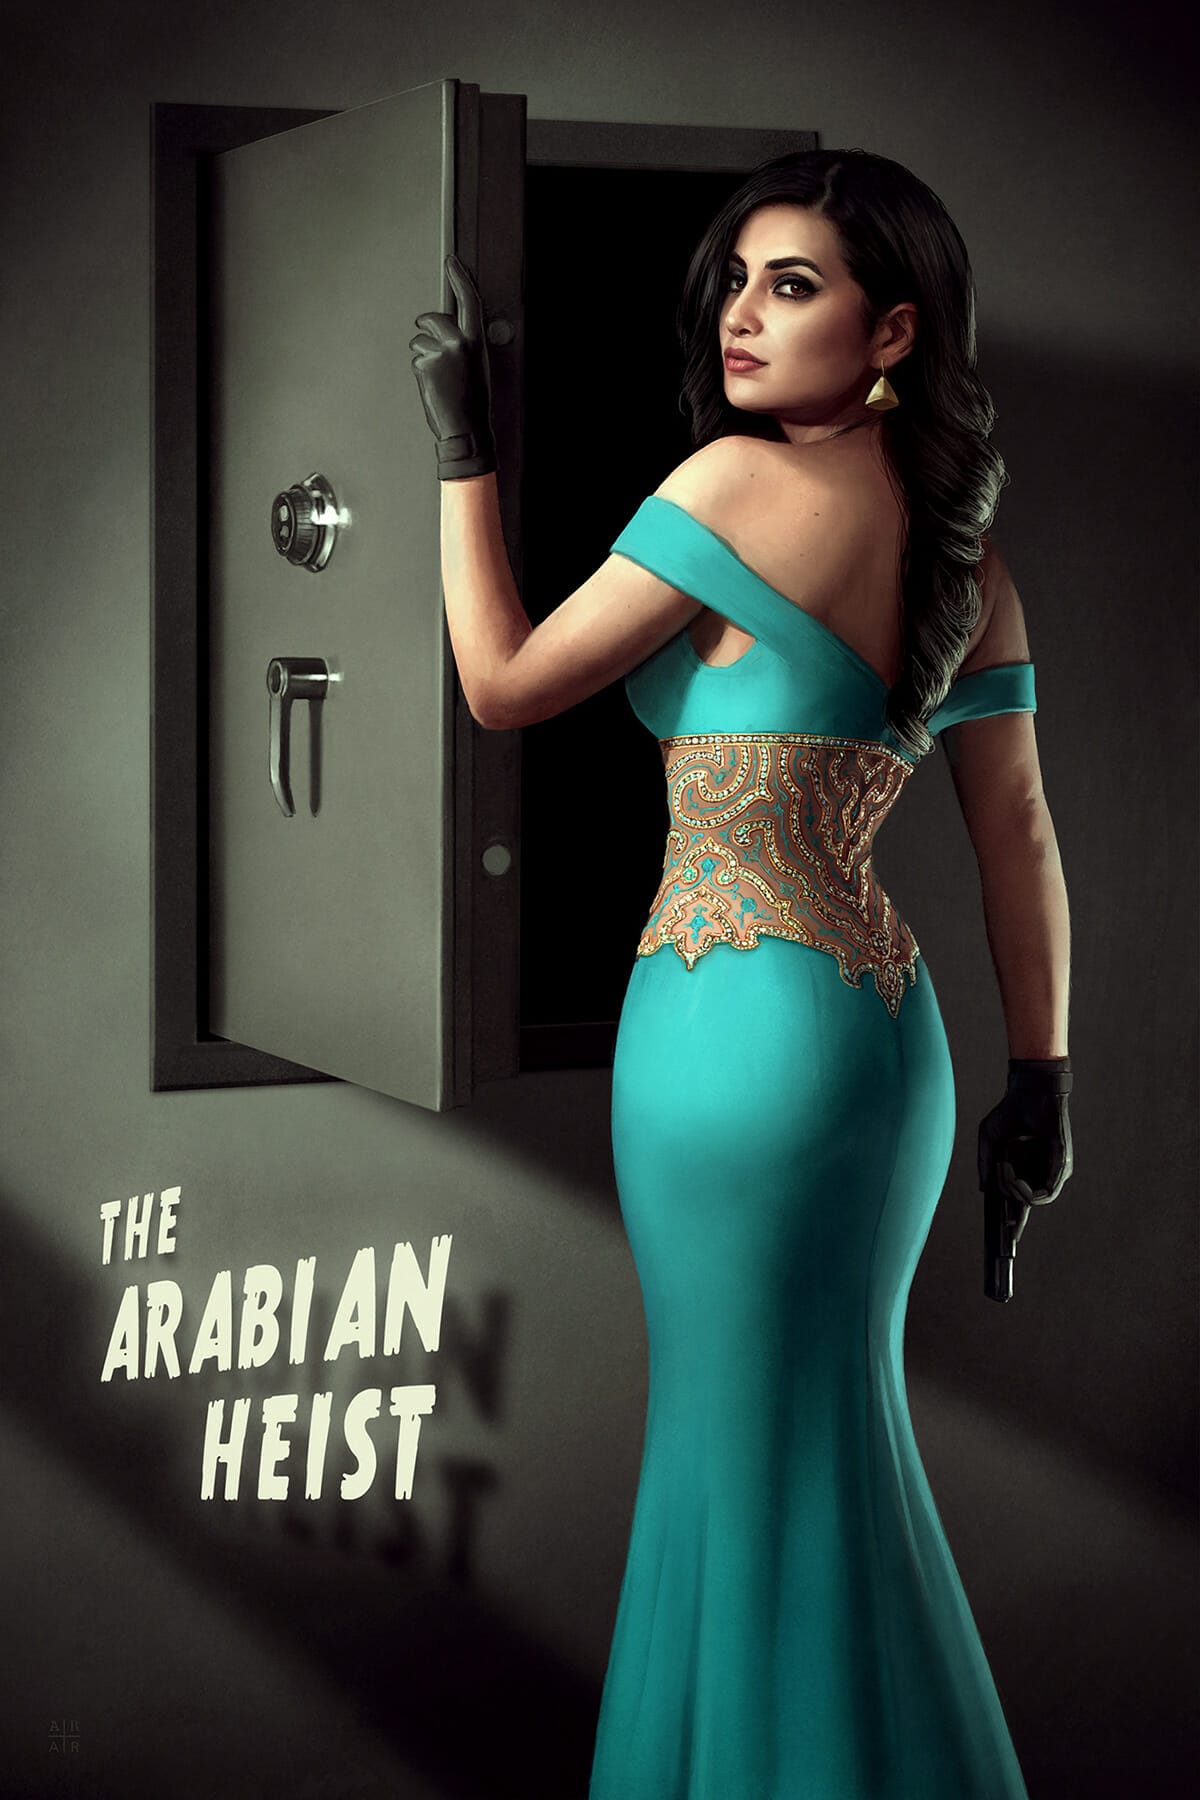 The Arabian Heist